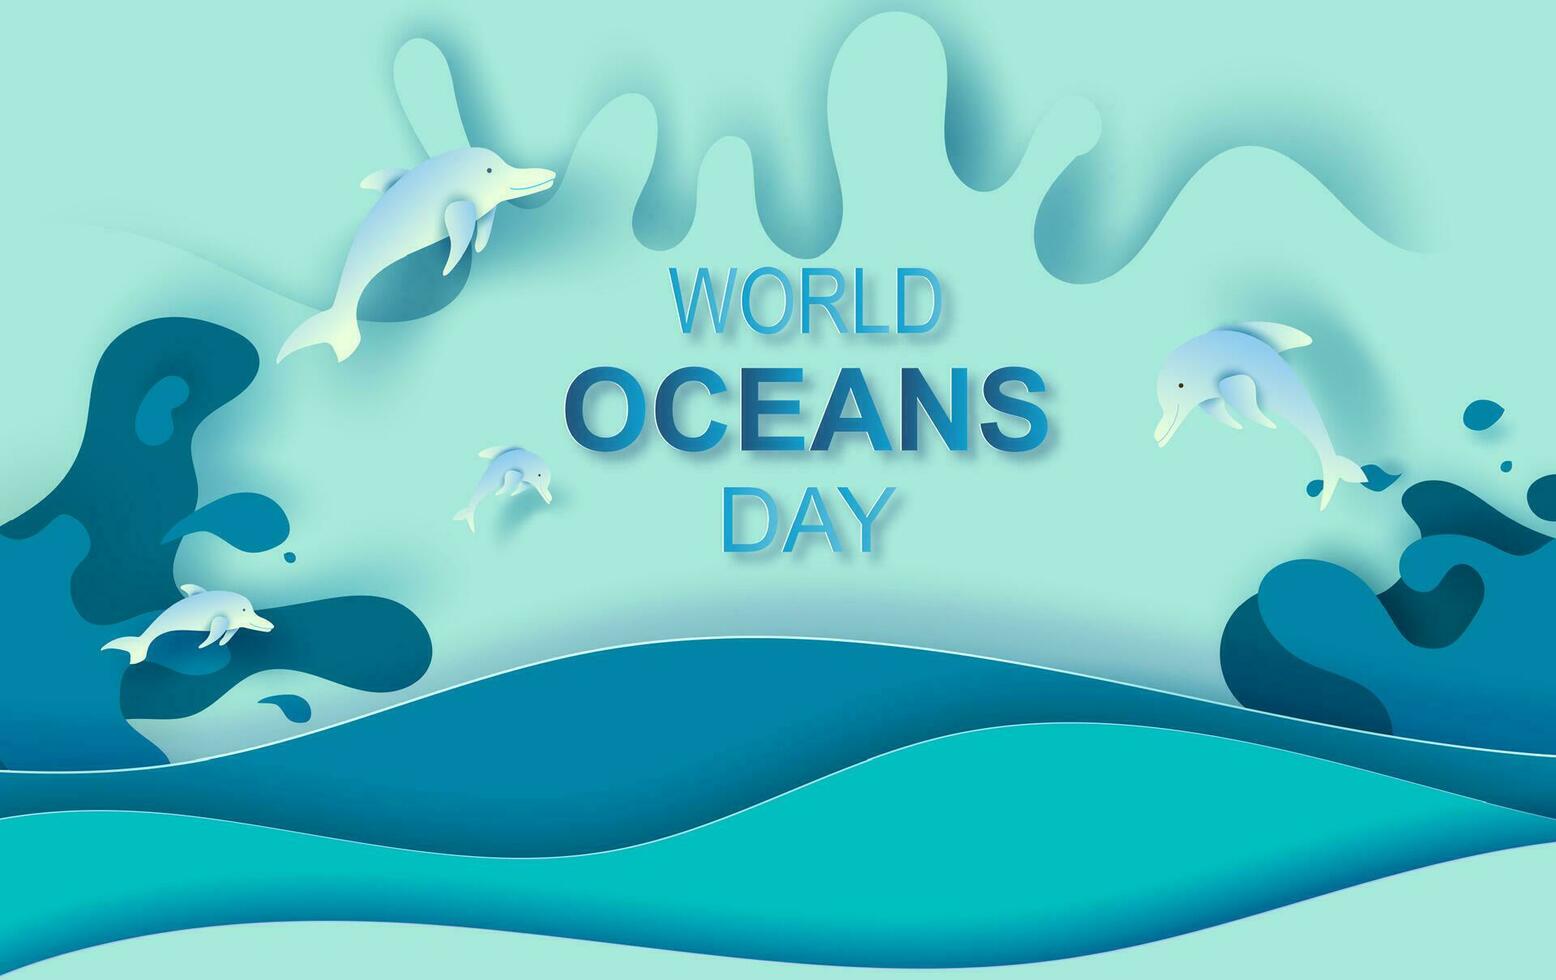 papel arte e cortar conceito do mundo oceanos dia. celebração dedicada para Socorro proteger mar terra e conservar água ecossistema. azul origami construir papel do mar ondas.golfinhos estão pulando alegremente dentro mar. vetor